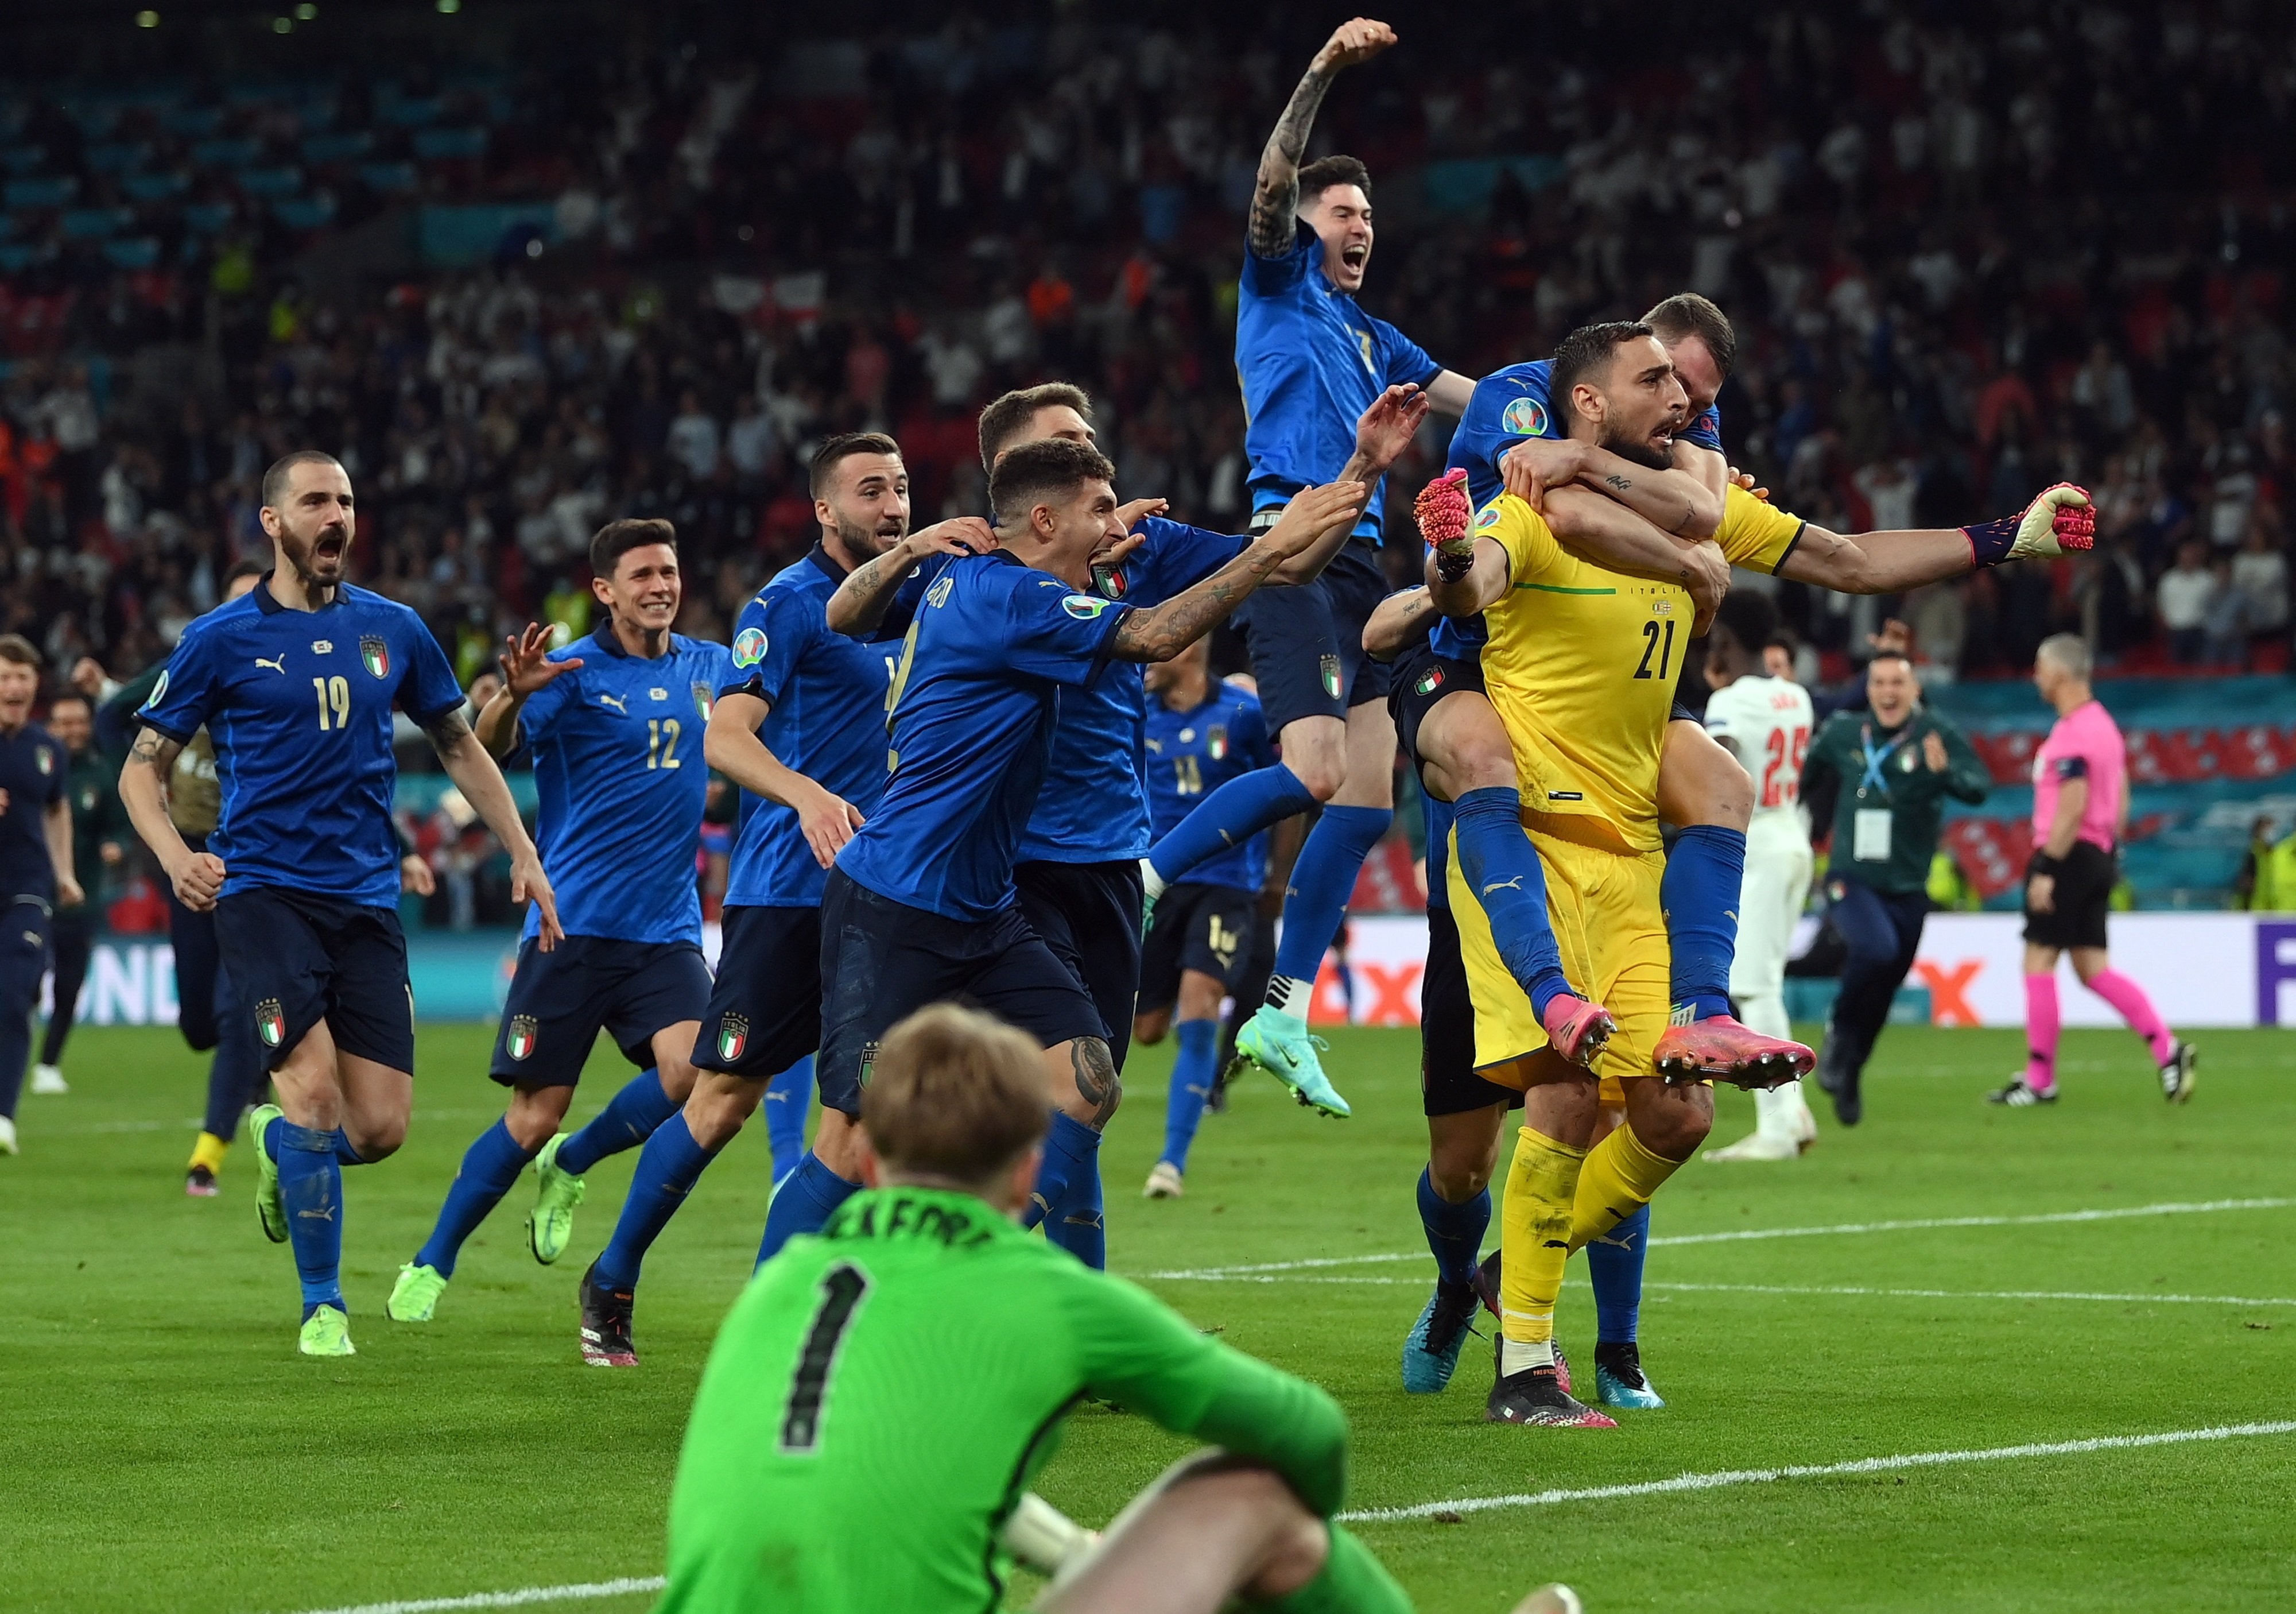 Italia celebra, Inglaterra llora: mejores imágenes de la final de la Eurocopa